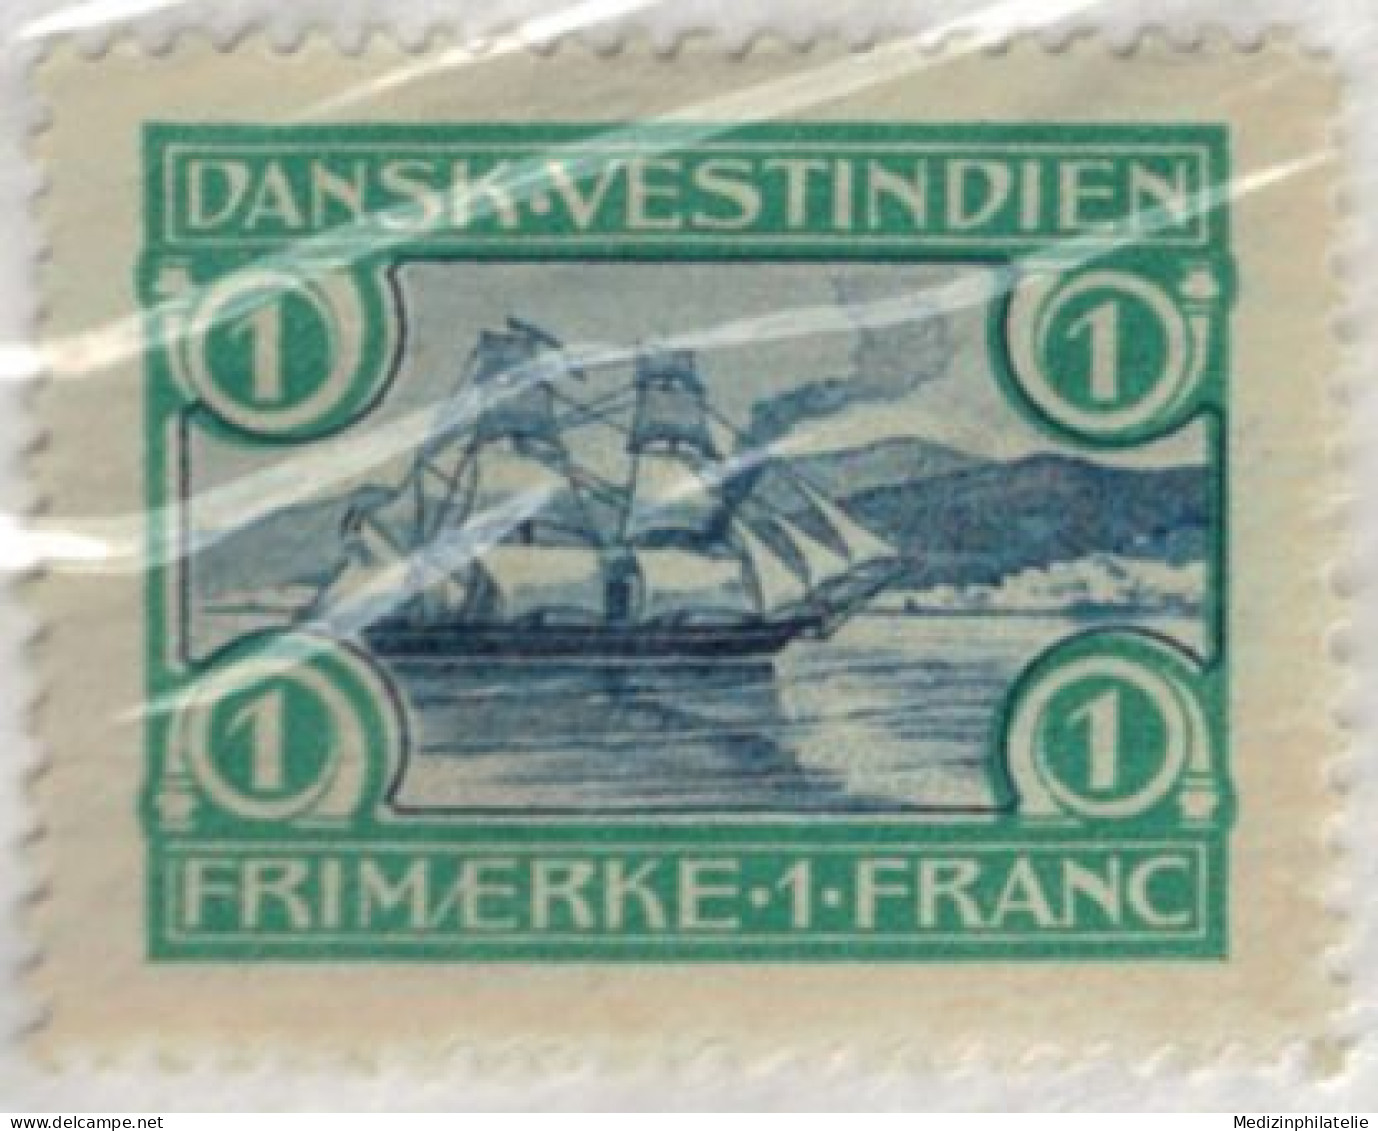 Dänemark Westindien Nr. 35-37 1905 - Deens West-Indië